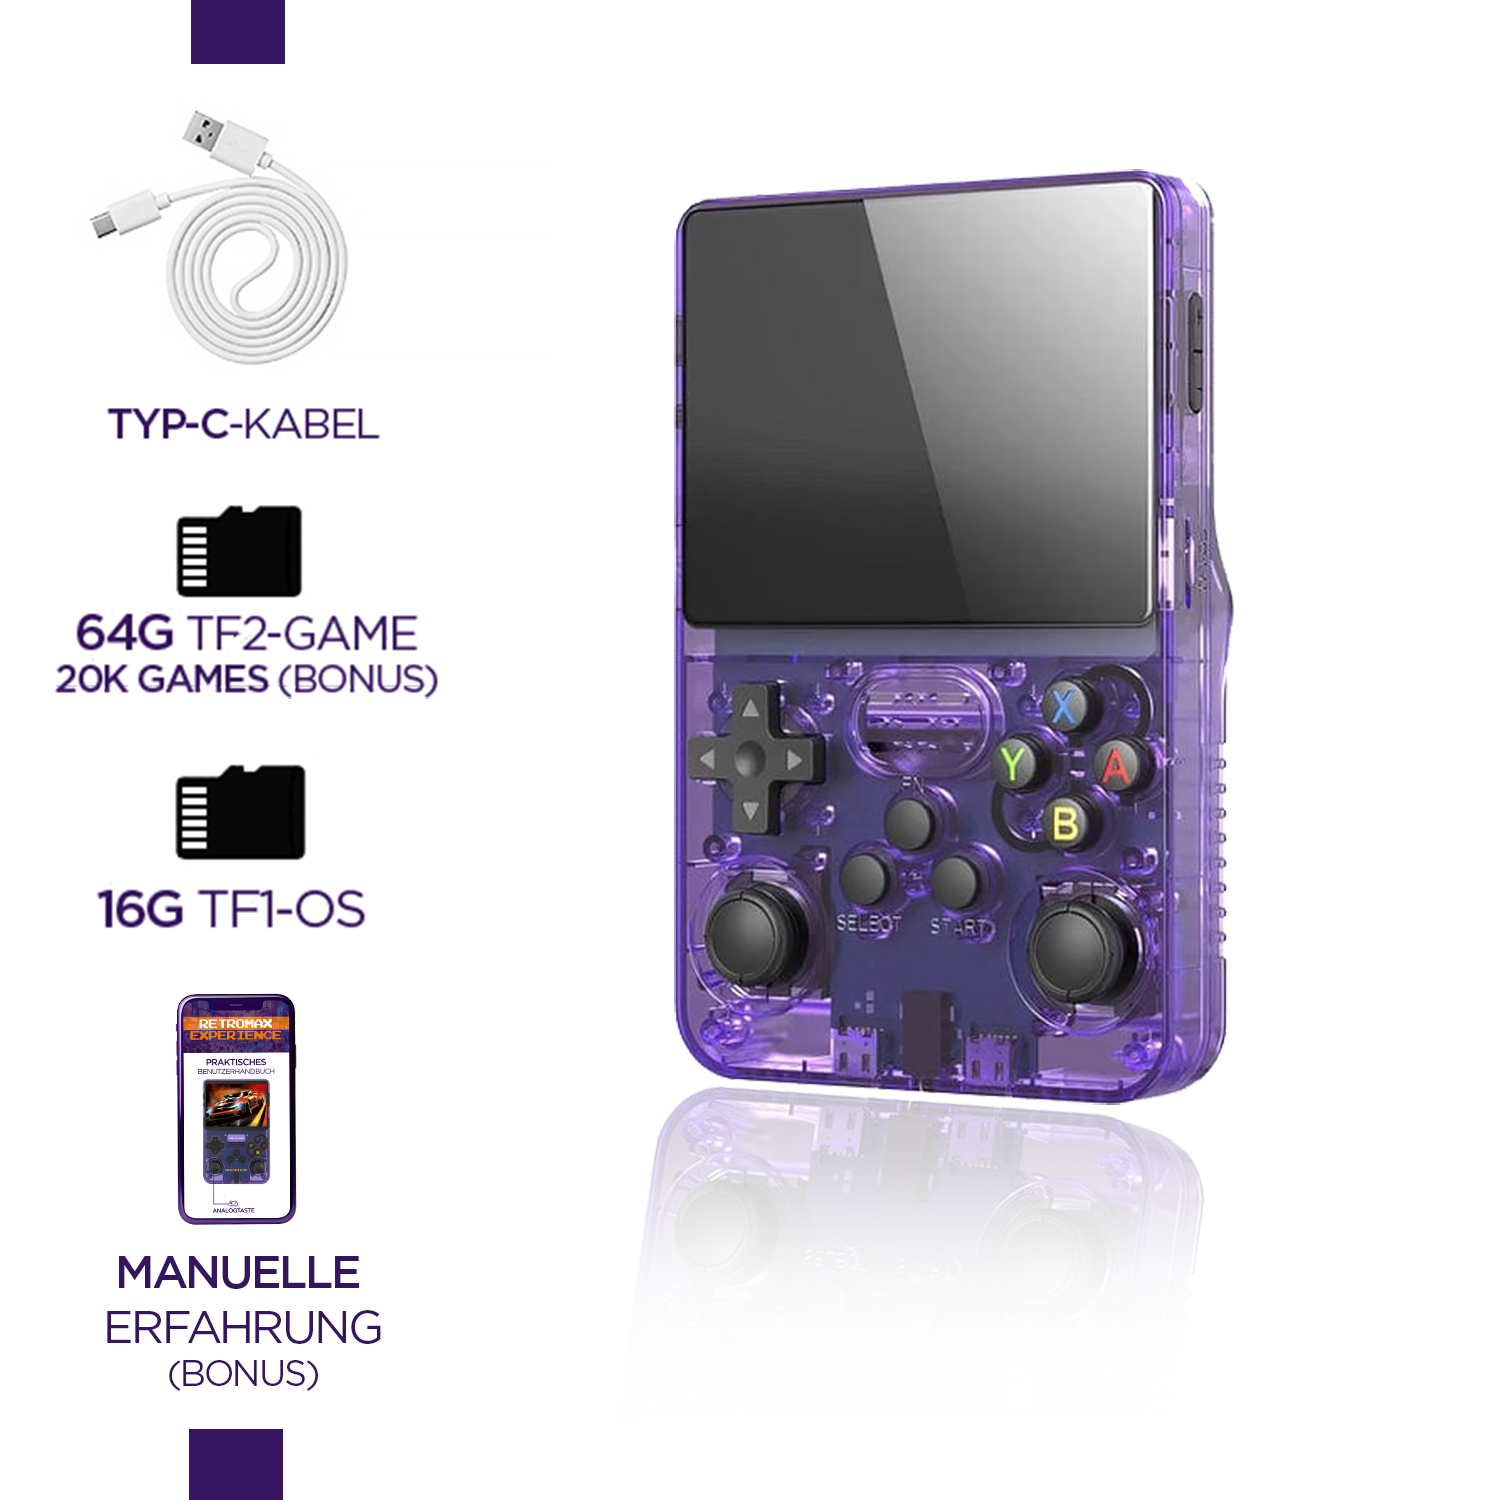 Palm Game Nostalgix + Bonus-Speicherkarte, 20.000 4K-Spiele und Ebook Retro Max Experience